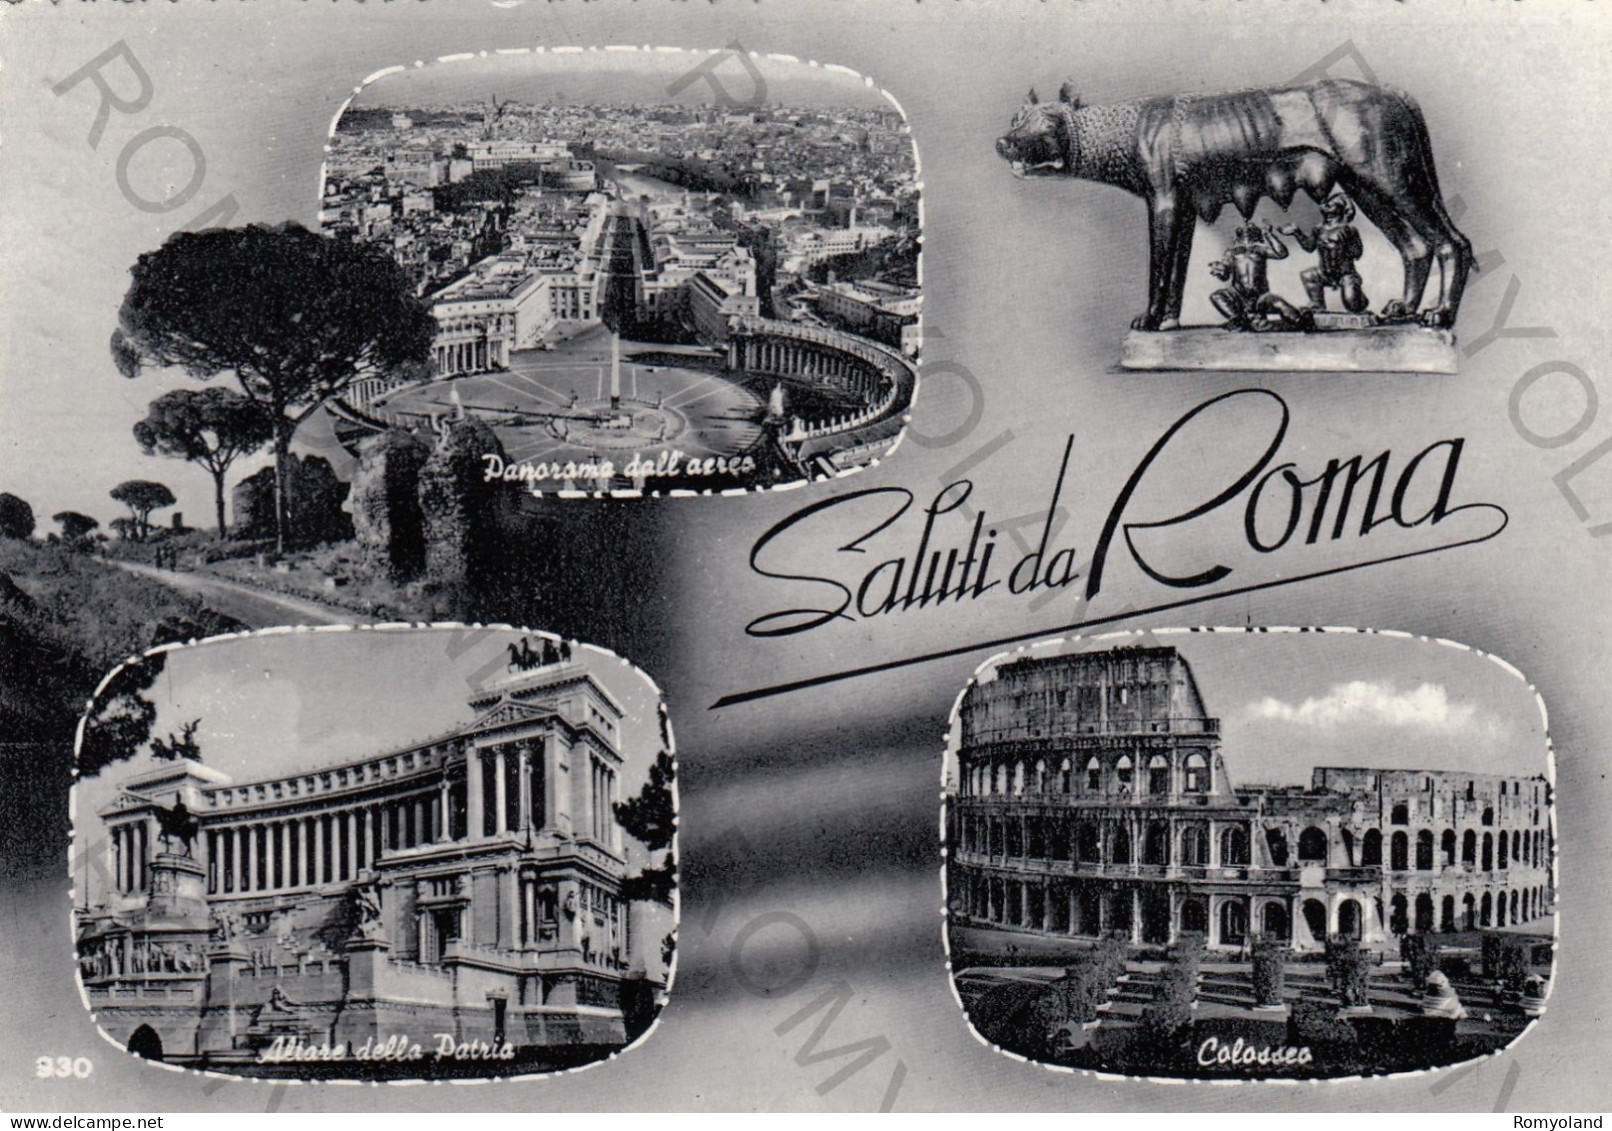 CARTOLINA  B7 ROMA,LAZIO-SALUTI DA ROMA-ALTARE DELLA PATRIA-COLOSSEO-PANORAMA DALL'AEREO-STORIA,CULTURA,VIAGGIATA 1965 - Colisée